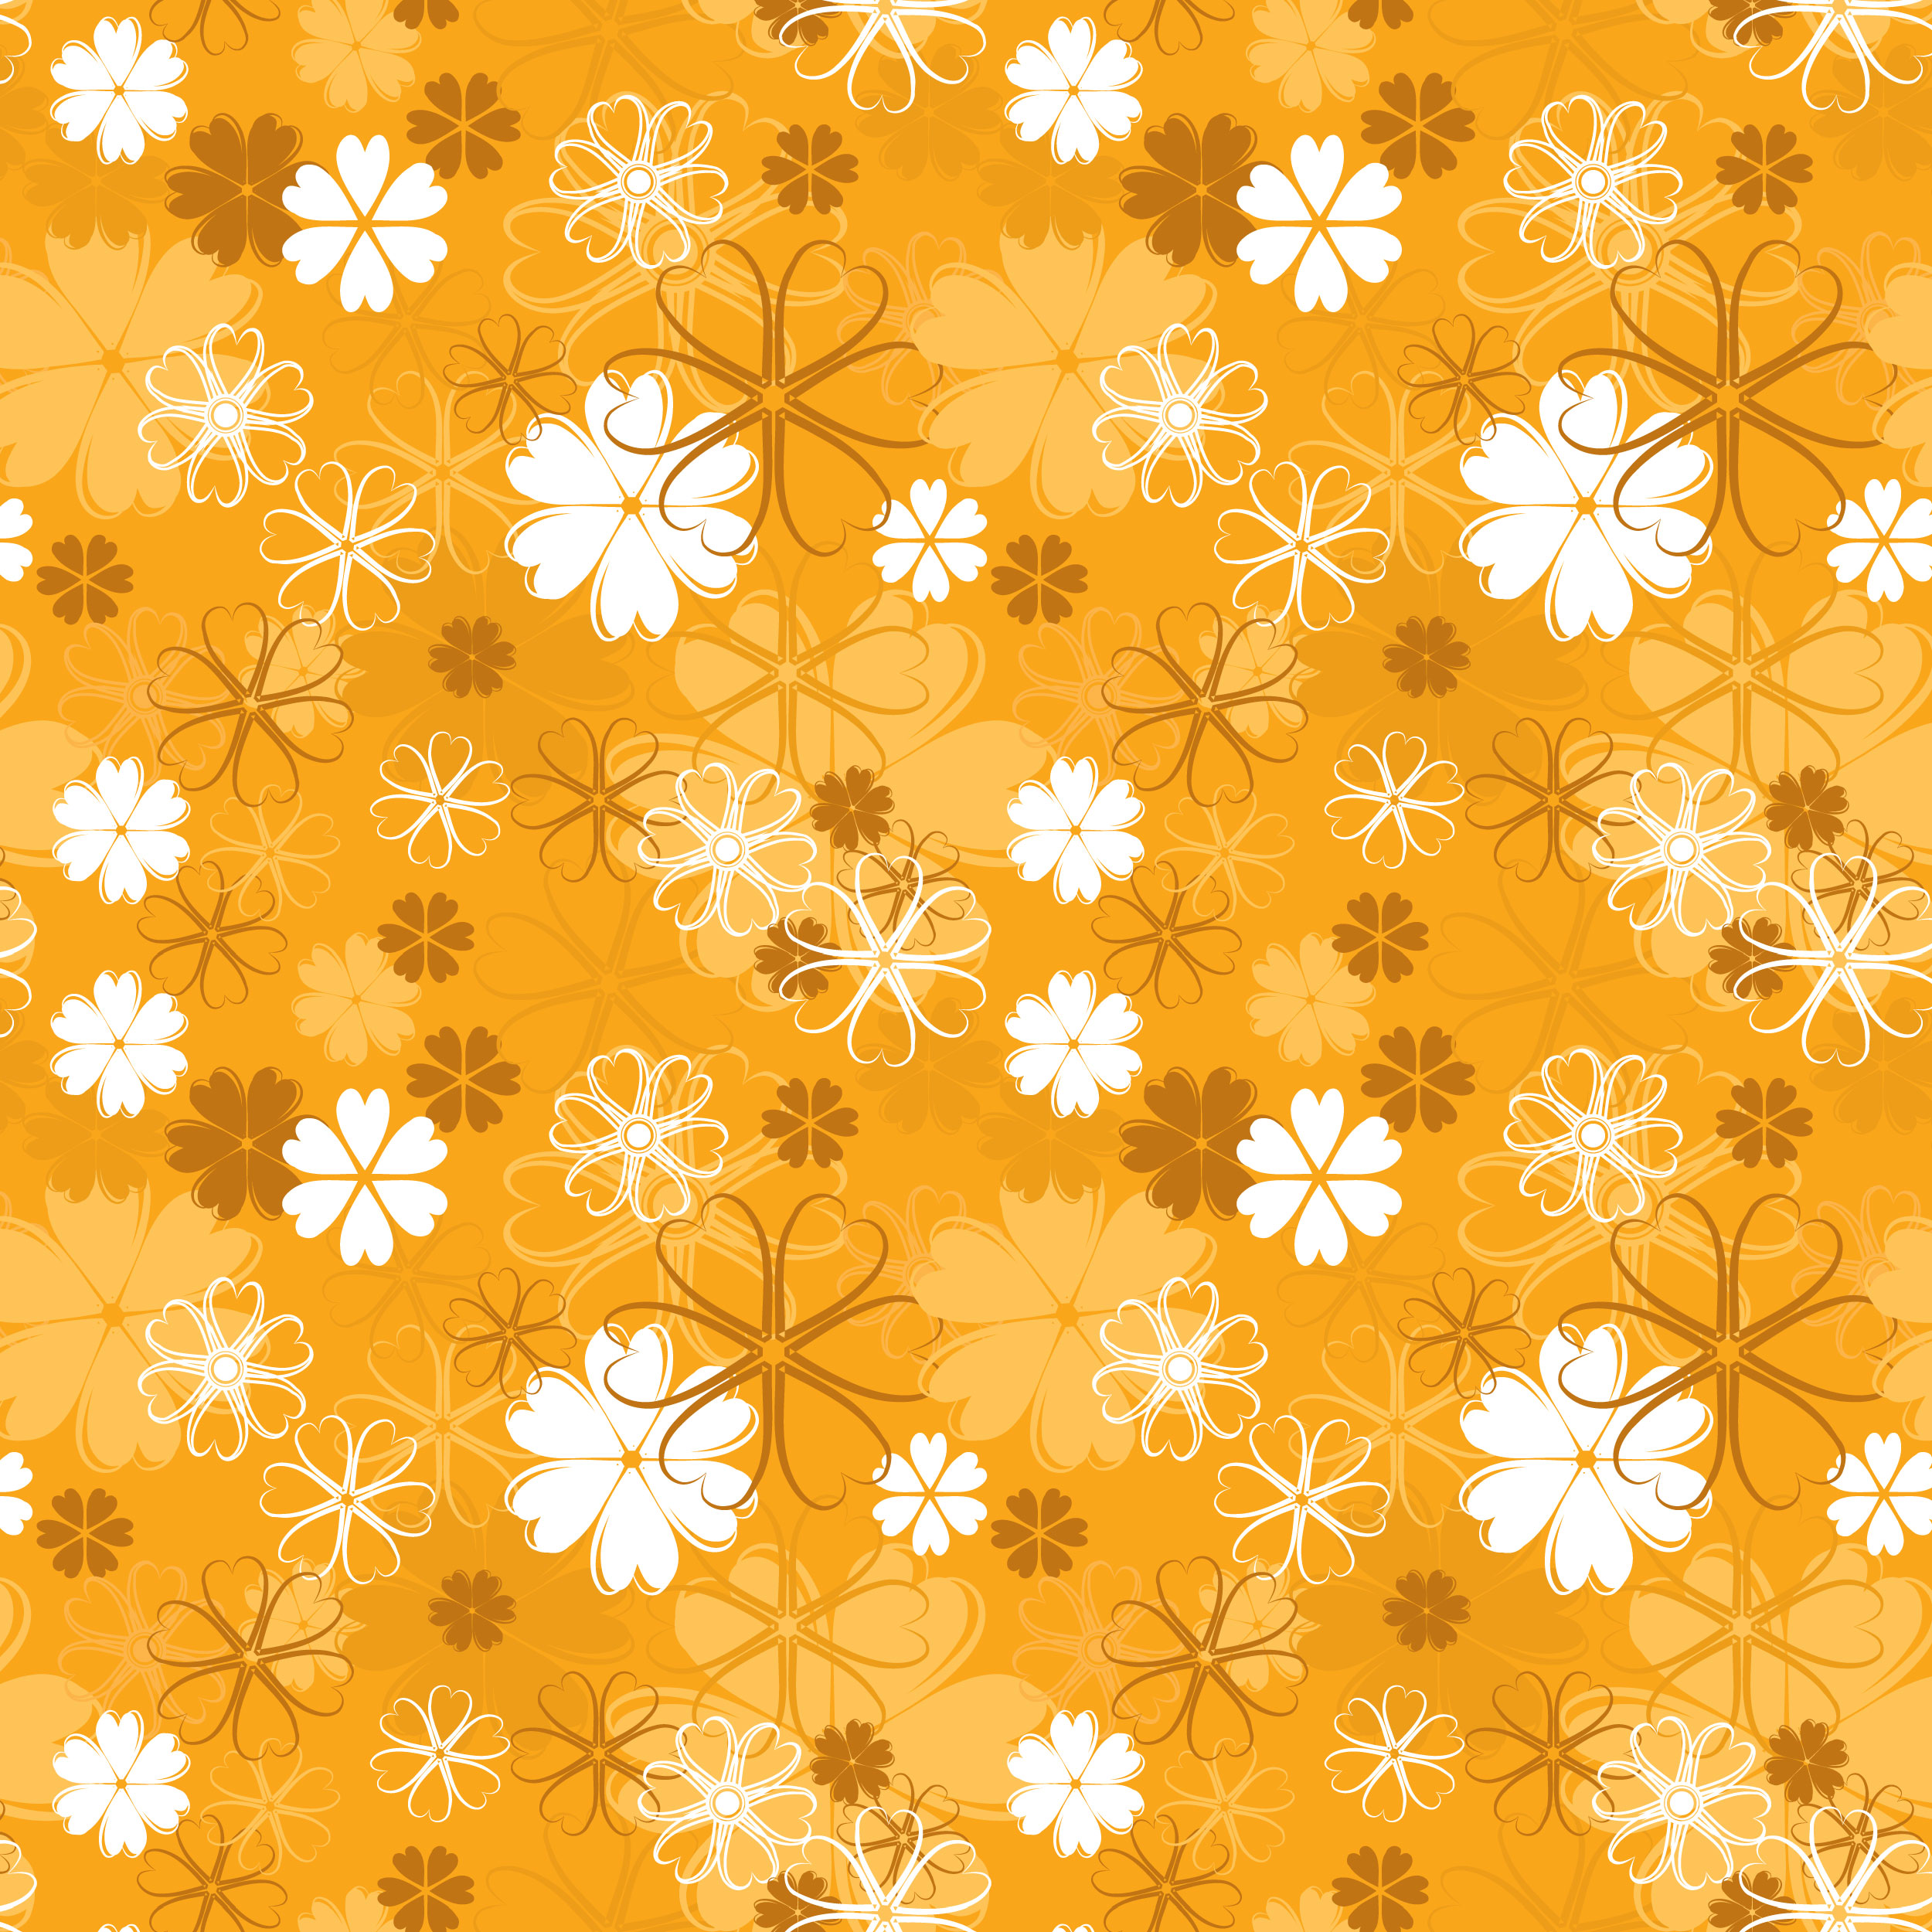 壁紙 背景イラスト 花の模様 柄 パターン No 044 白茶オレンジ たくさん